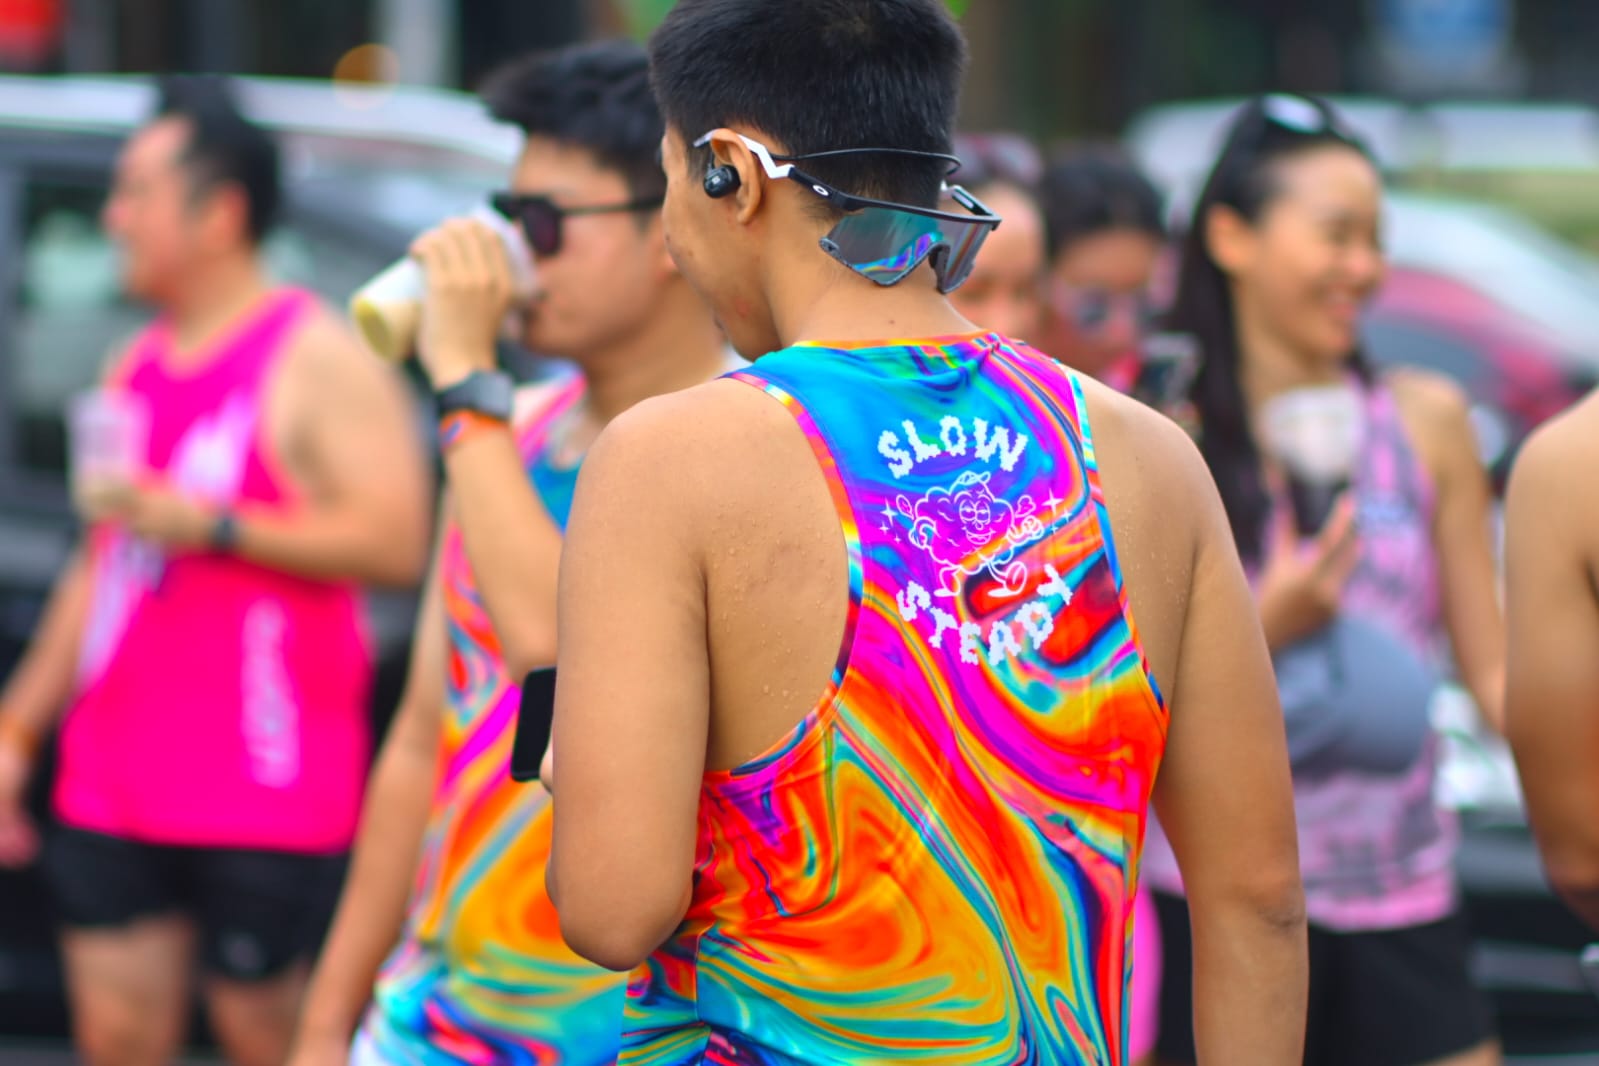 Puluhan Runners Meriahkan Suasana Pagi di Grand Island Dengan Jersey Penuh Warna